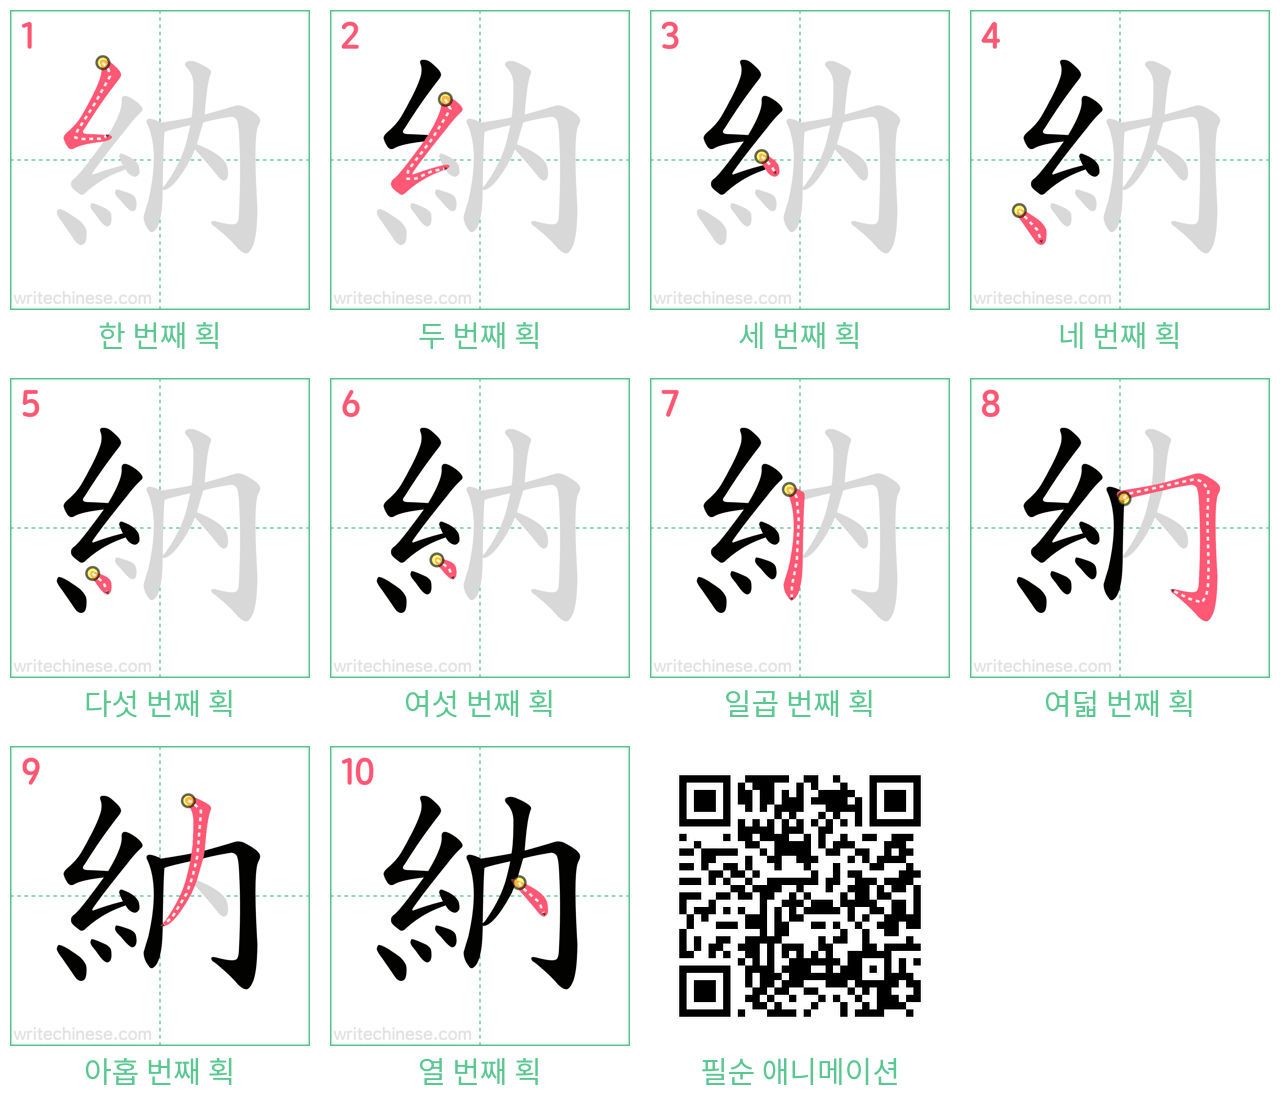 納 step-by-step stroke order diagrams